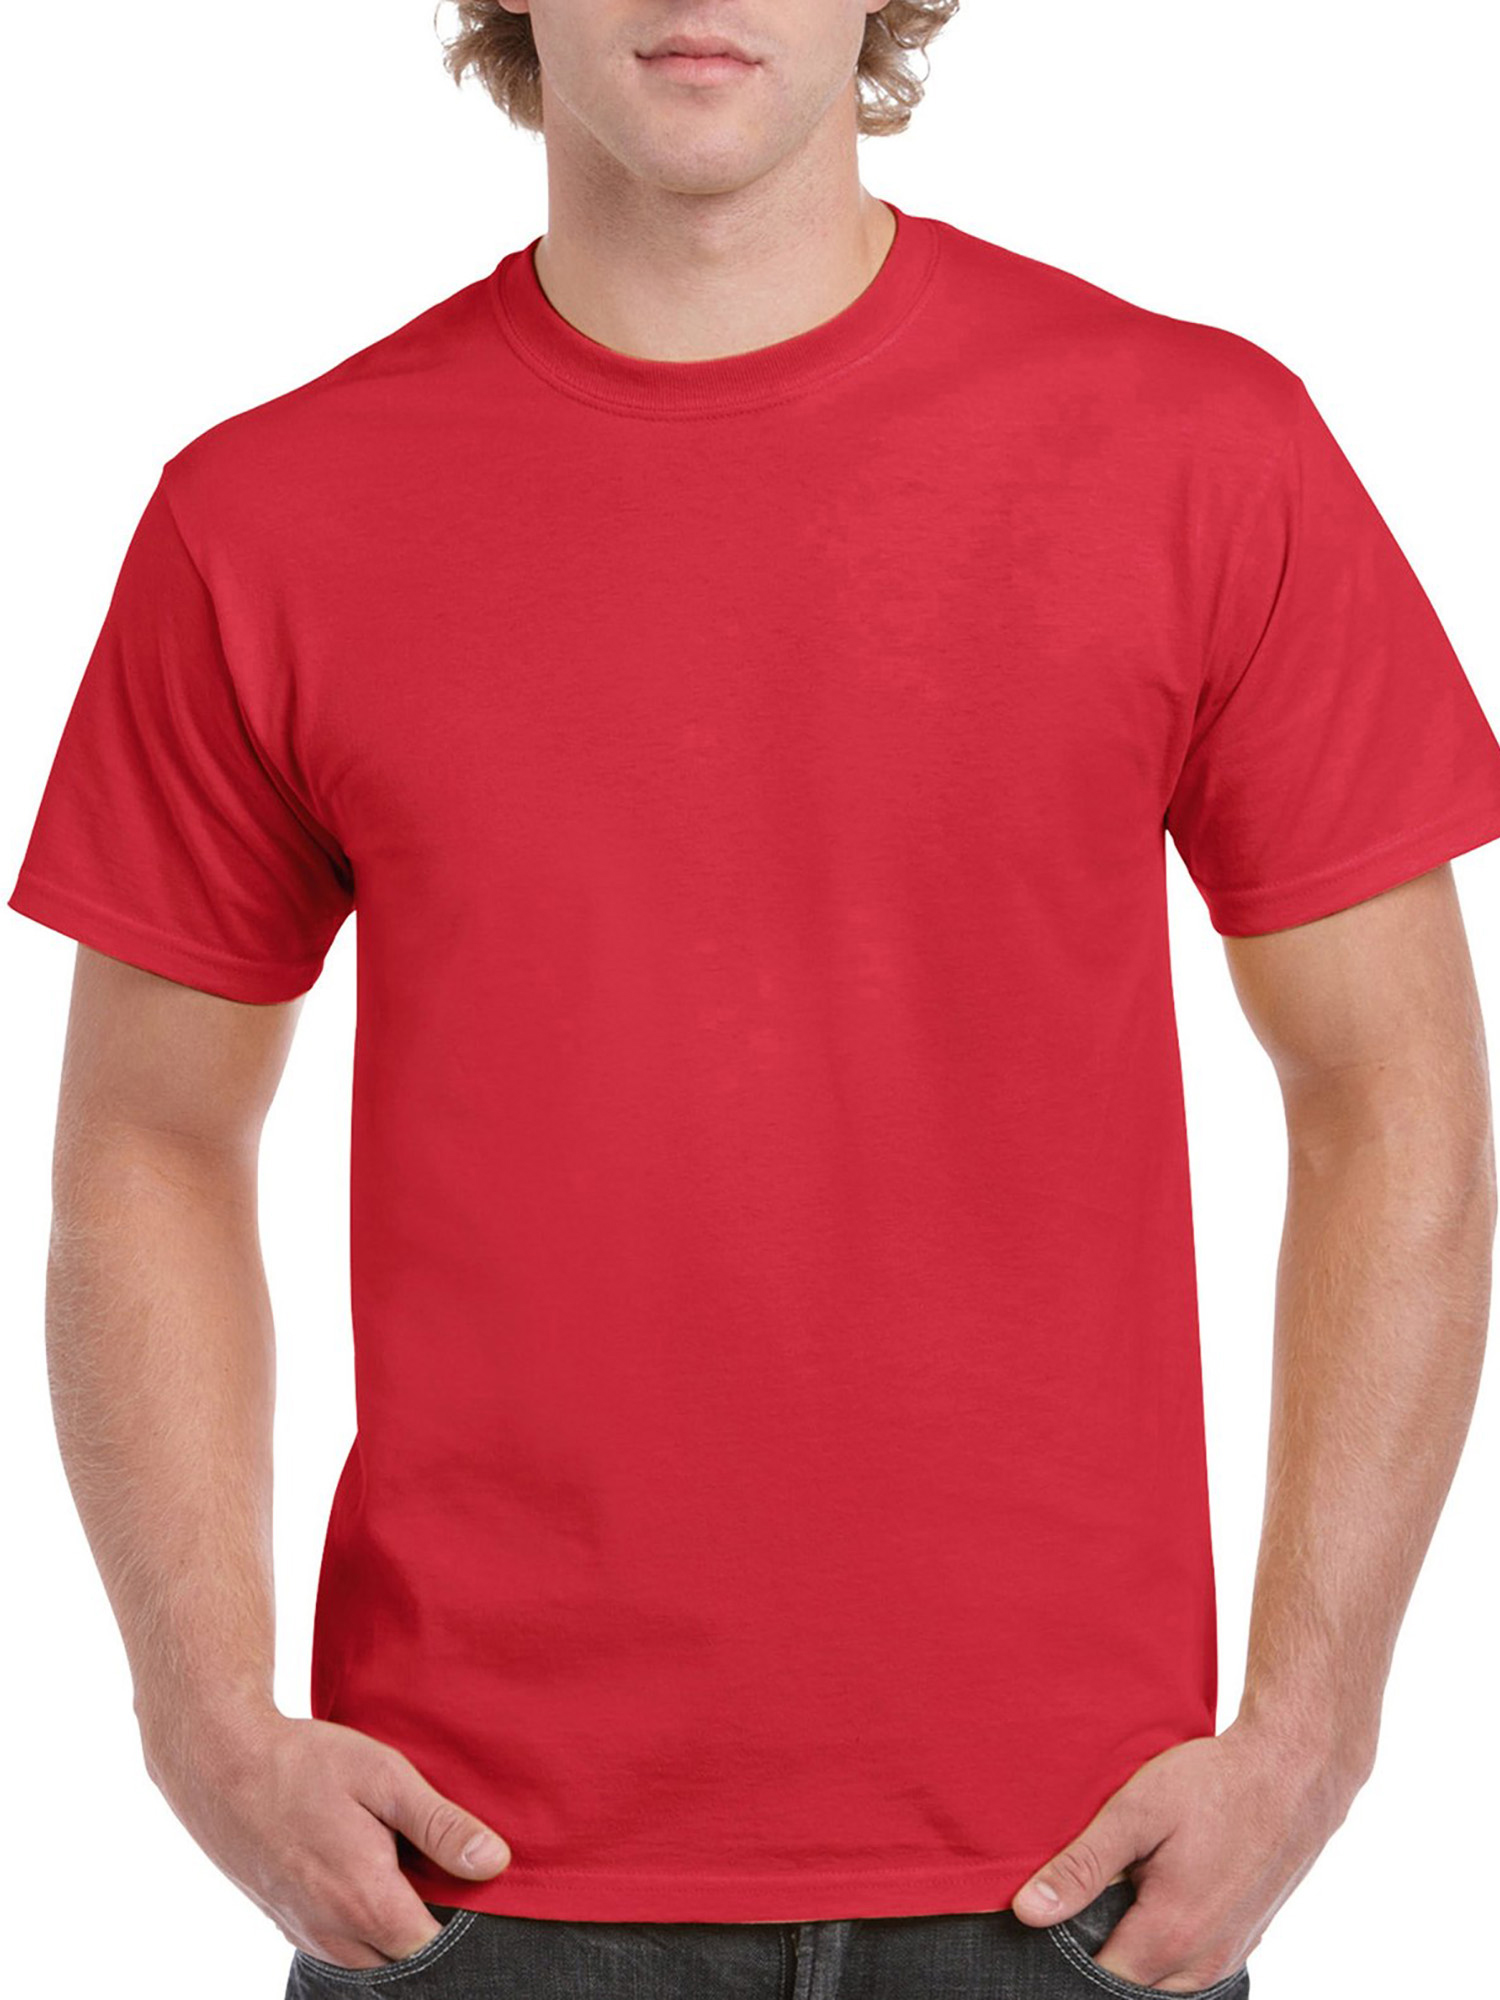 Gildan - Mens Classic Short Sleeve T-Shirt - Walmart.com